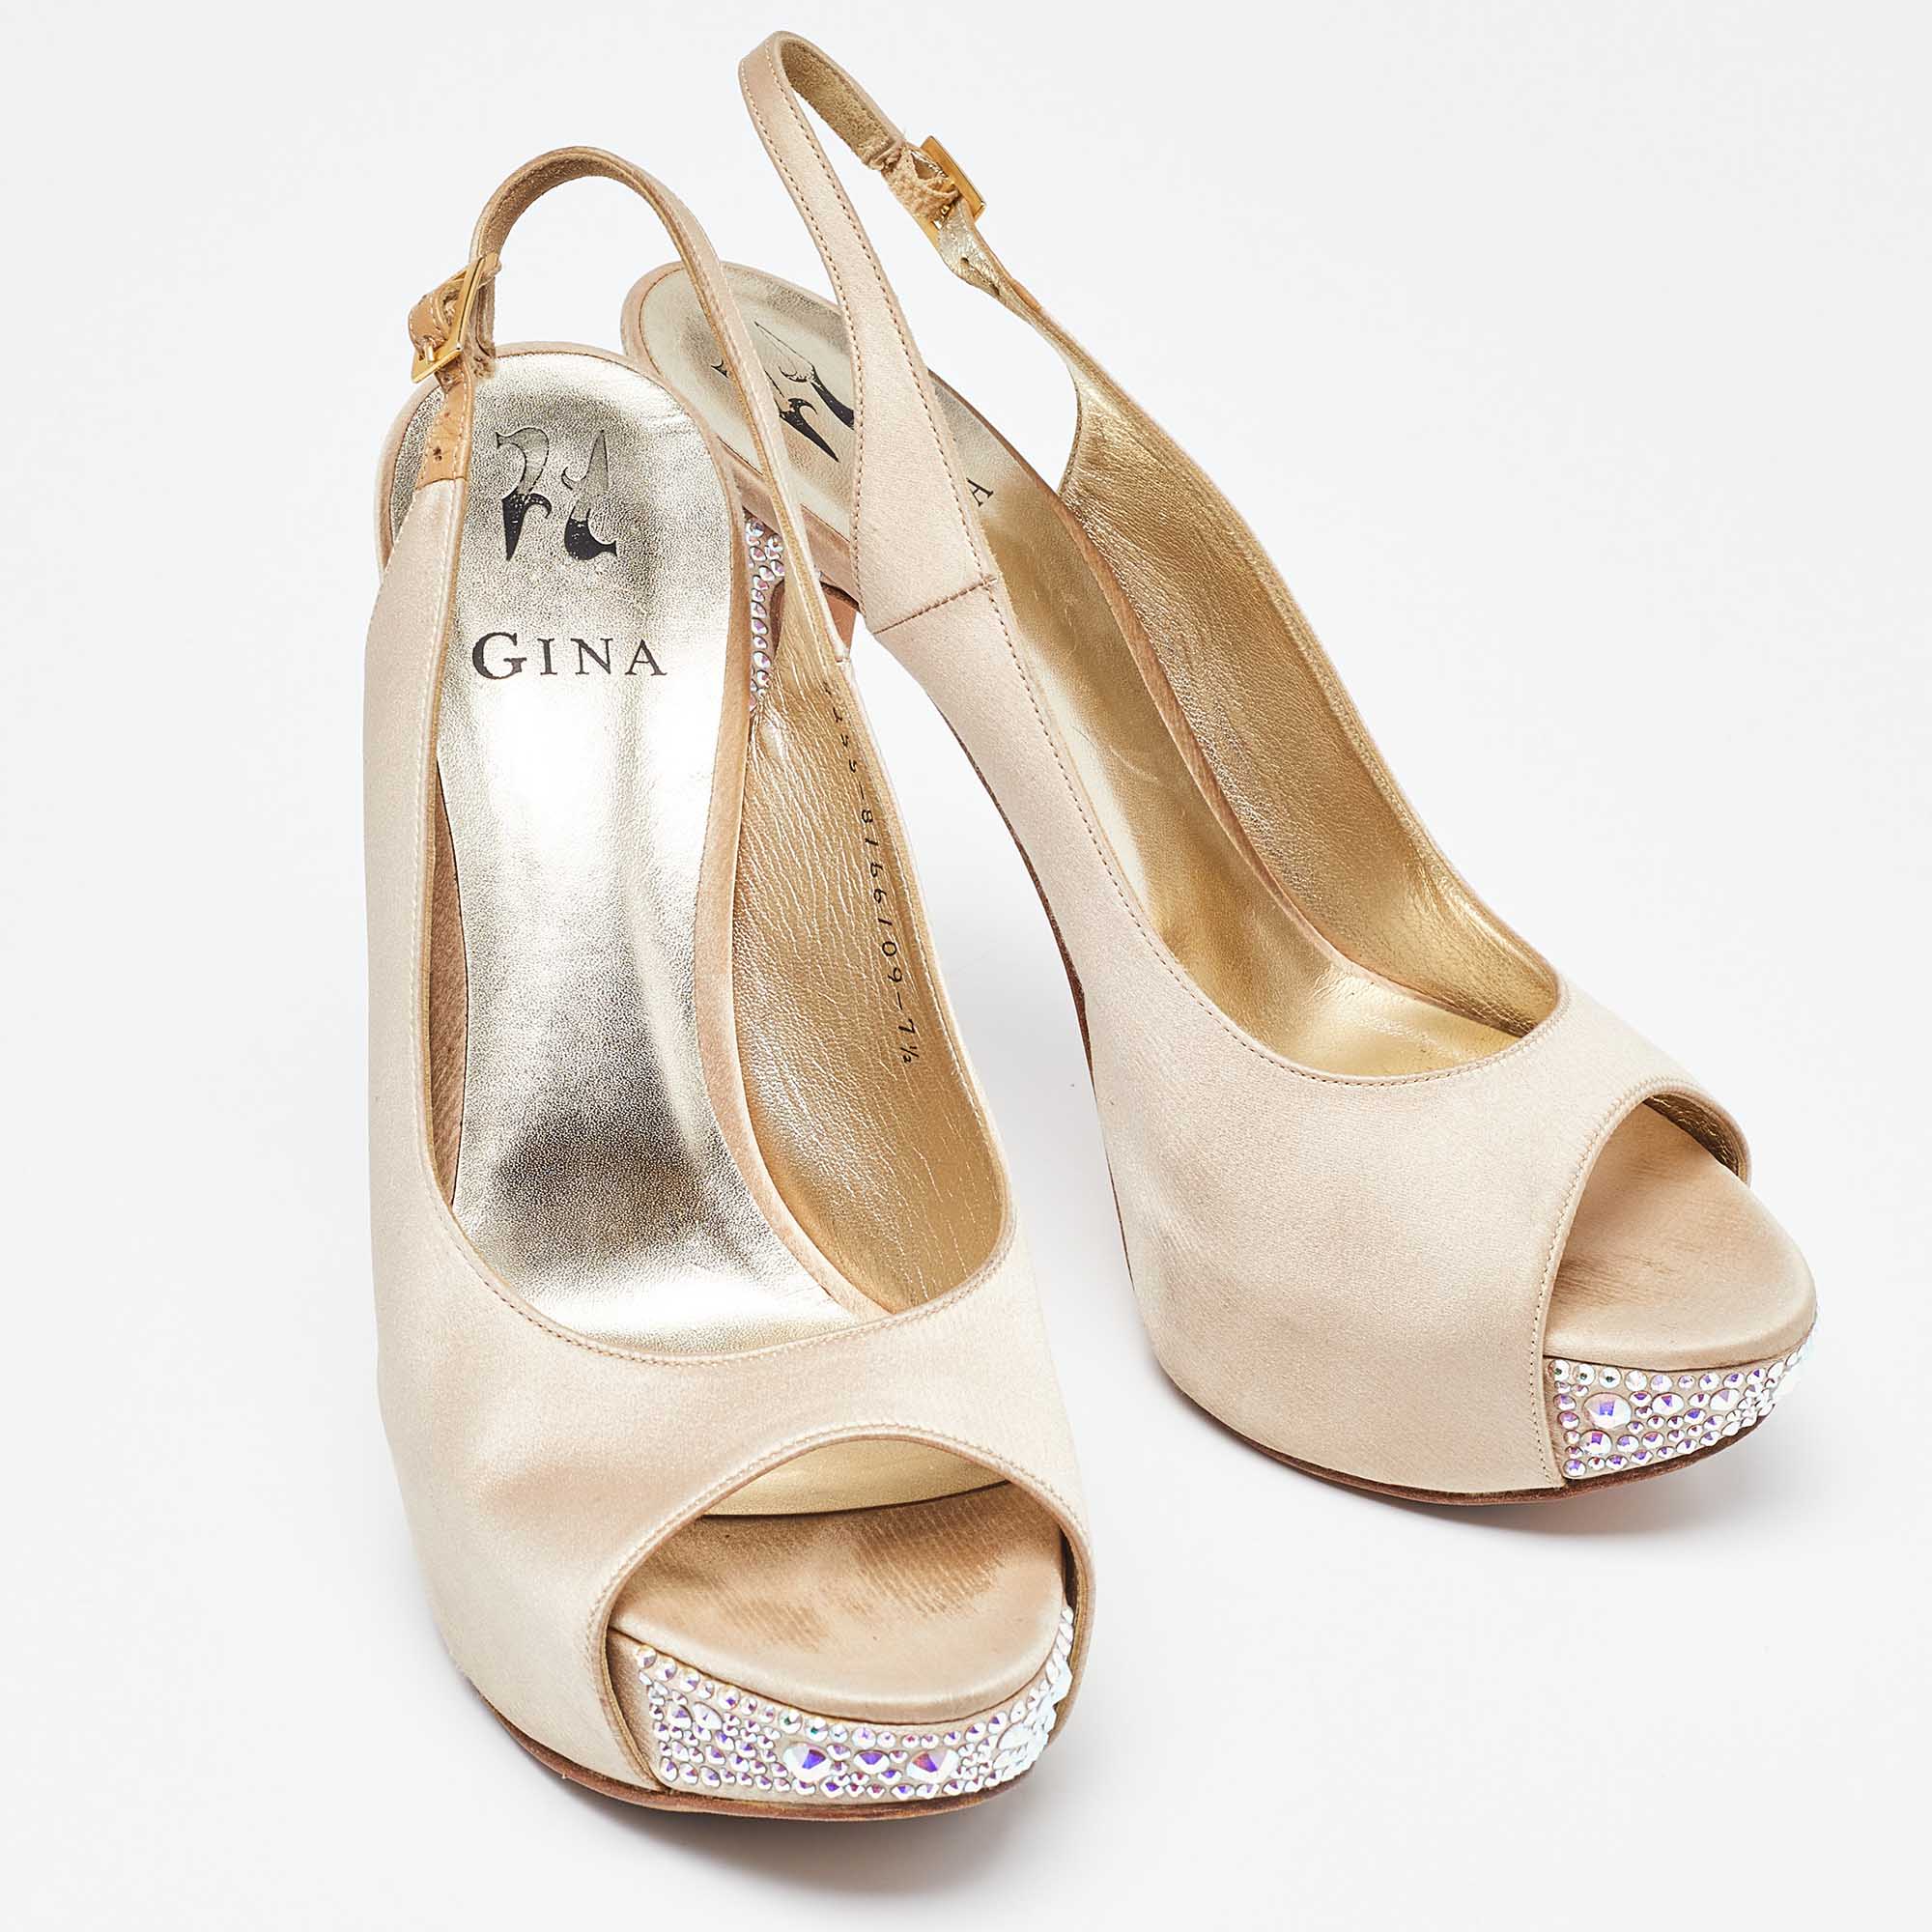 Gina Beige Satin Crystal Embellished Peep Toe Slingback Platform Sandals Size 40.5